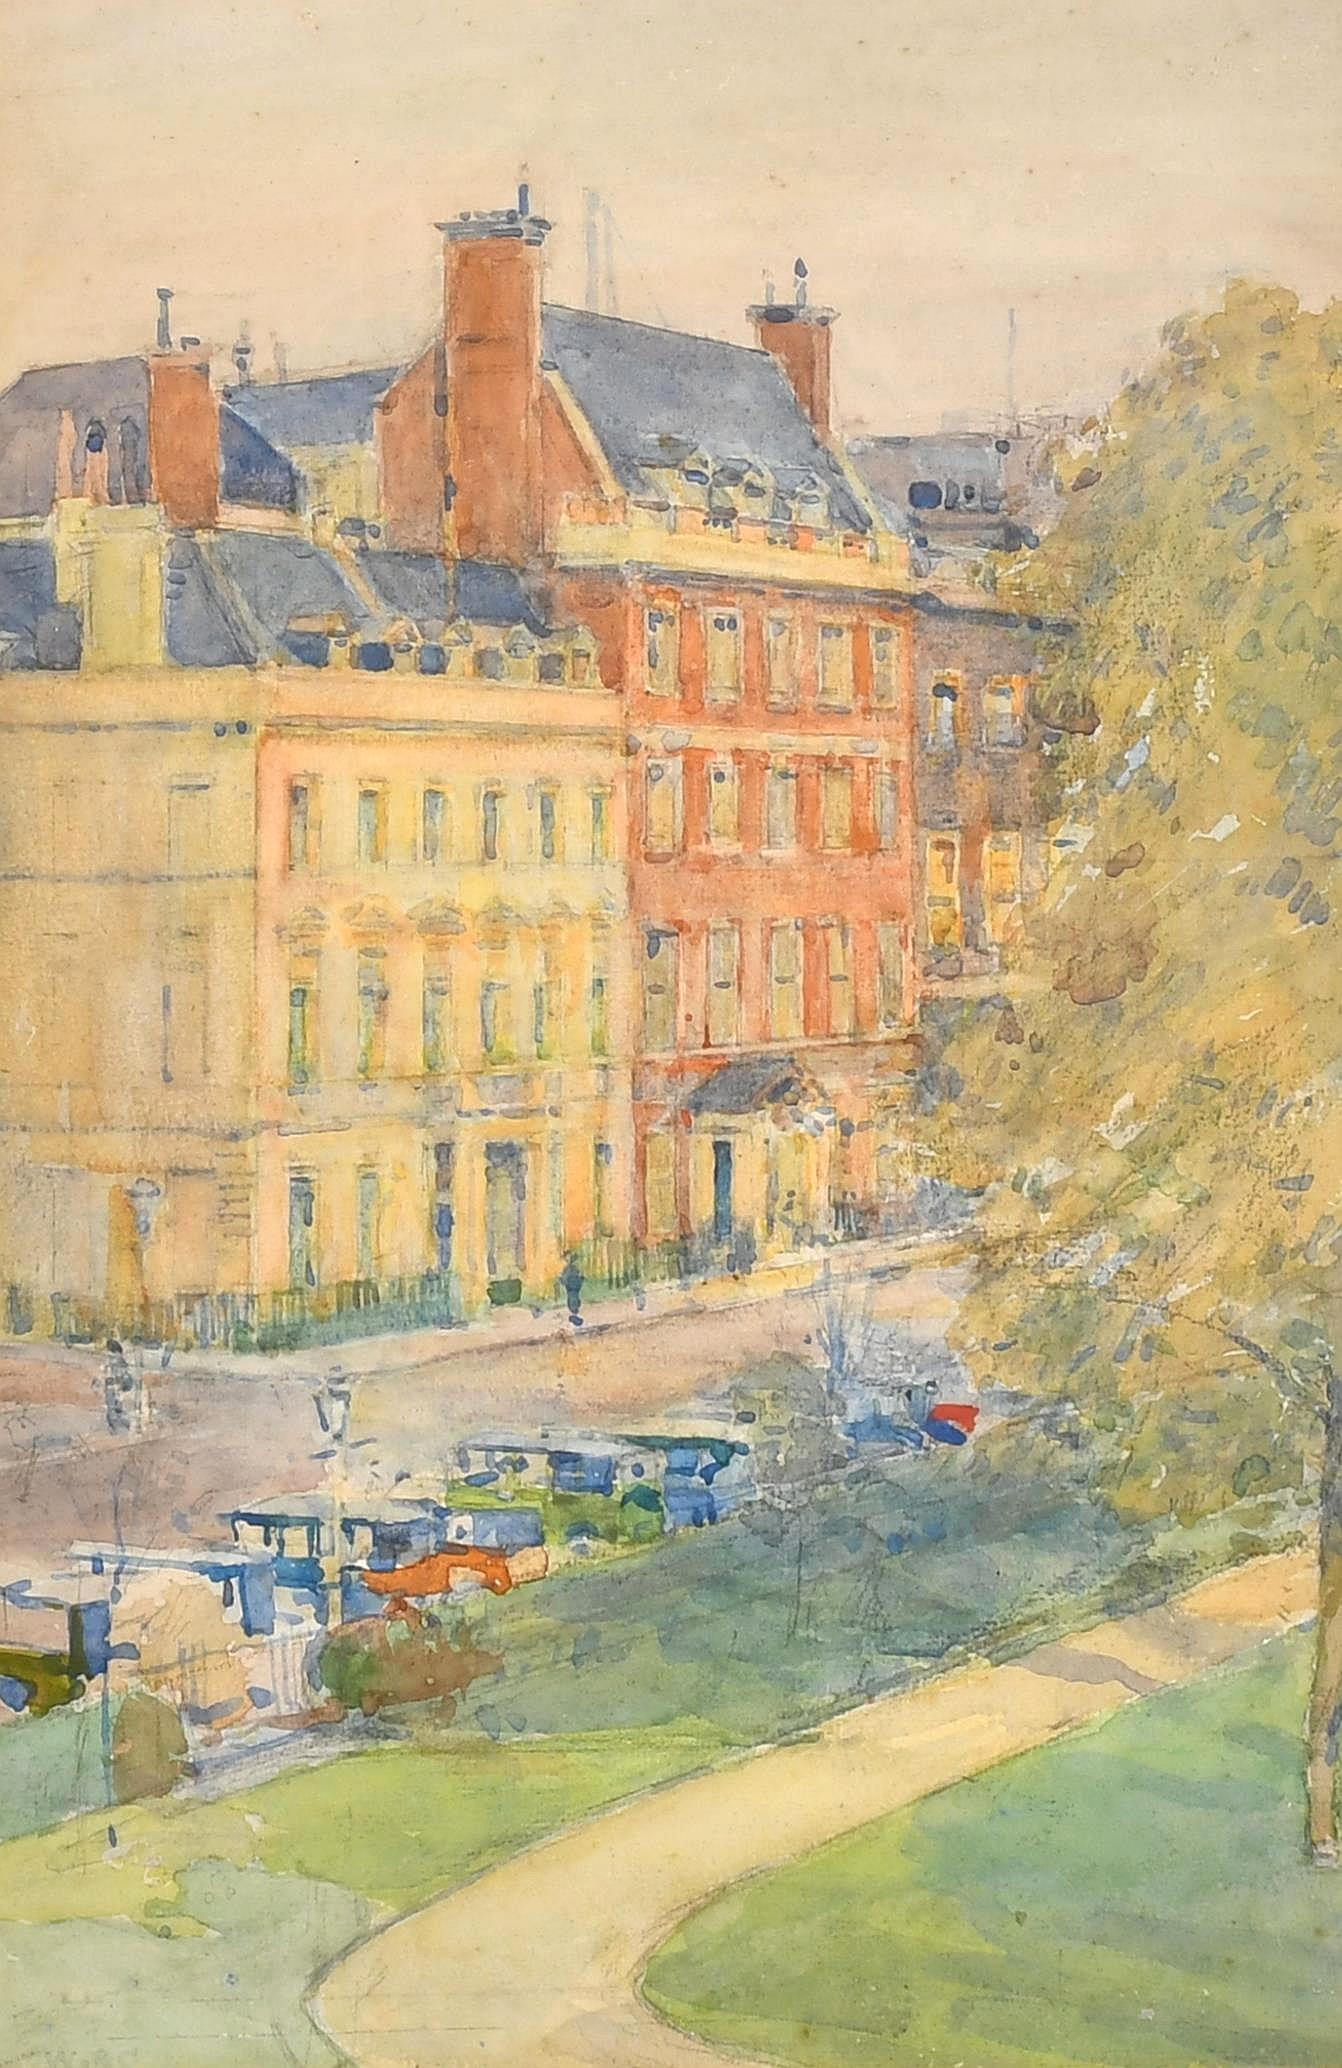 Diese wunderschöne Ansicht des St. James's Square im Zentrum Londons wurde von William Benjamin Chamberlin in den 1920er Jahren gemalt.

Das Werk wurde von einem Fenster in einem hohen Stockwerk eines Gebäudes auf der Nordseite des Platzes aus